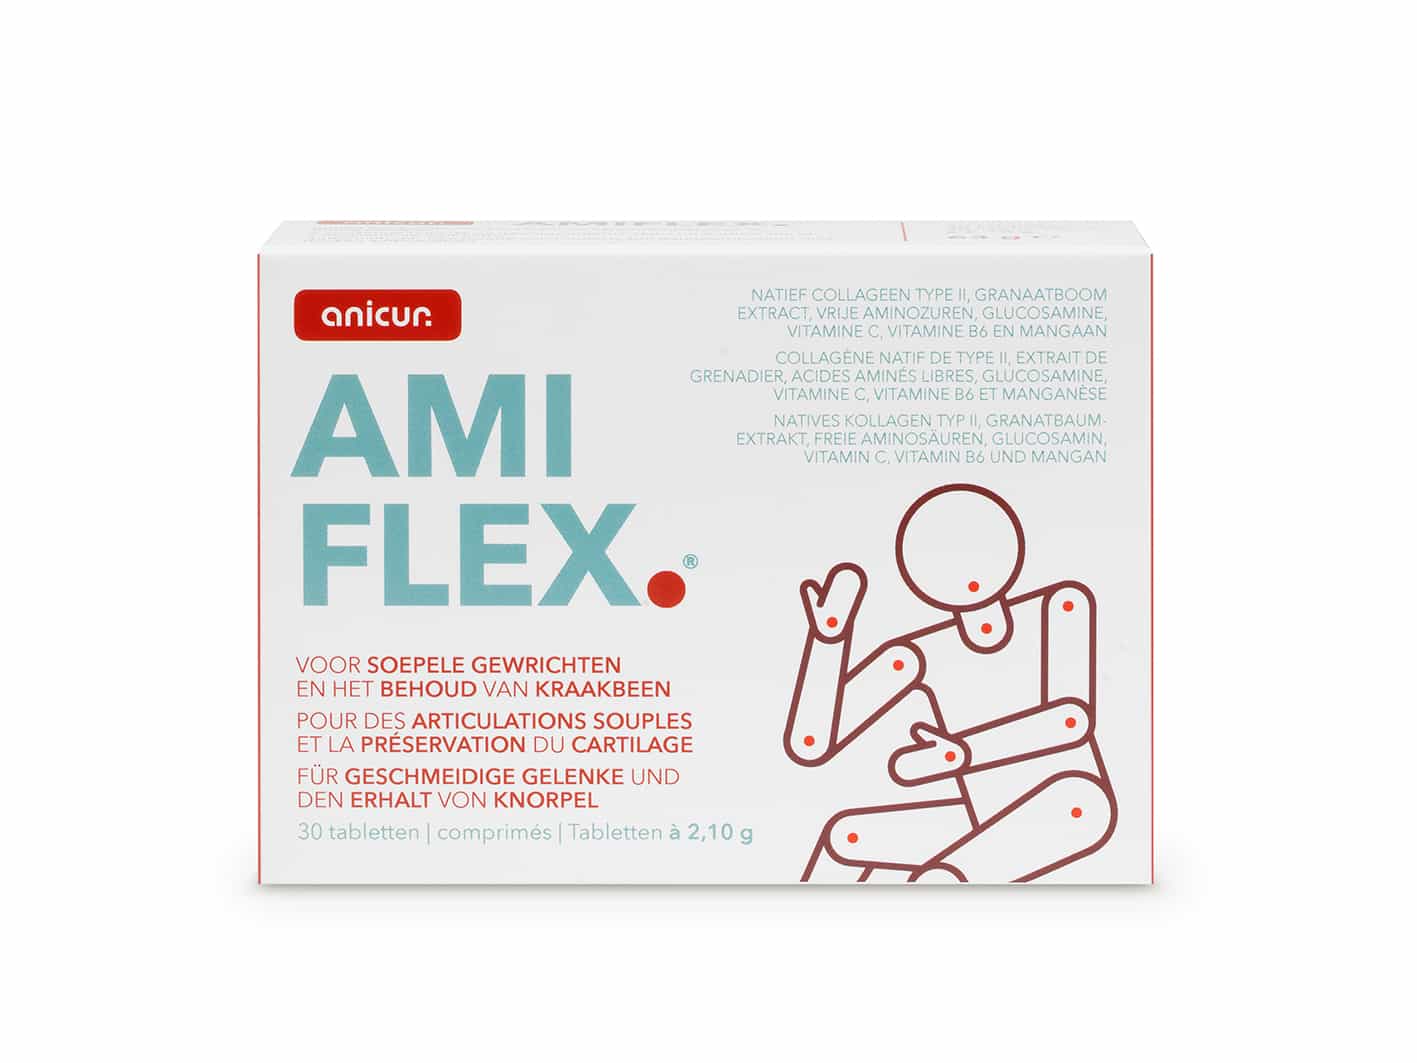 Anicur Amiflex